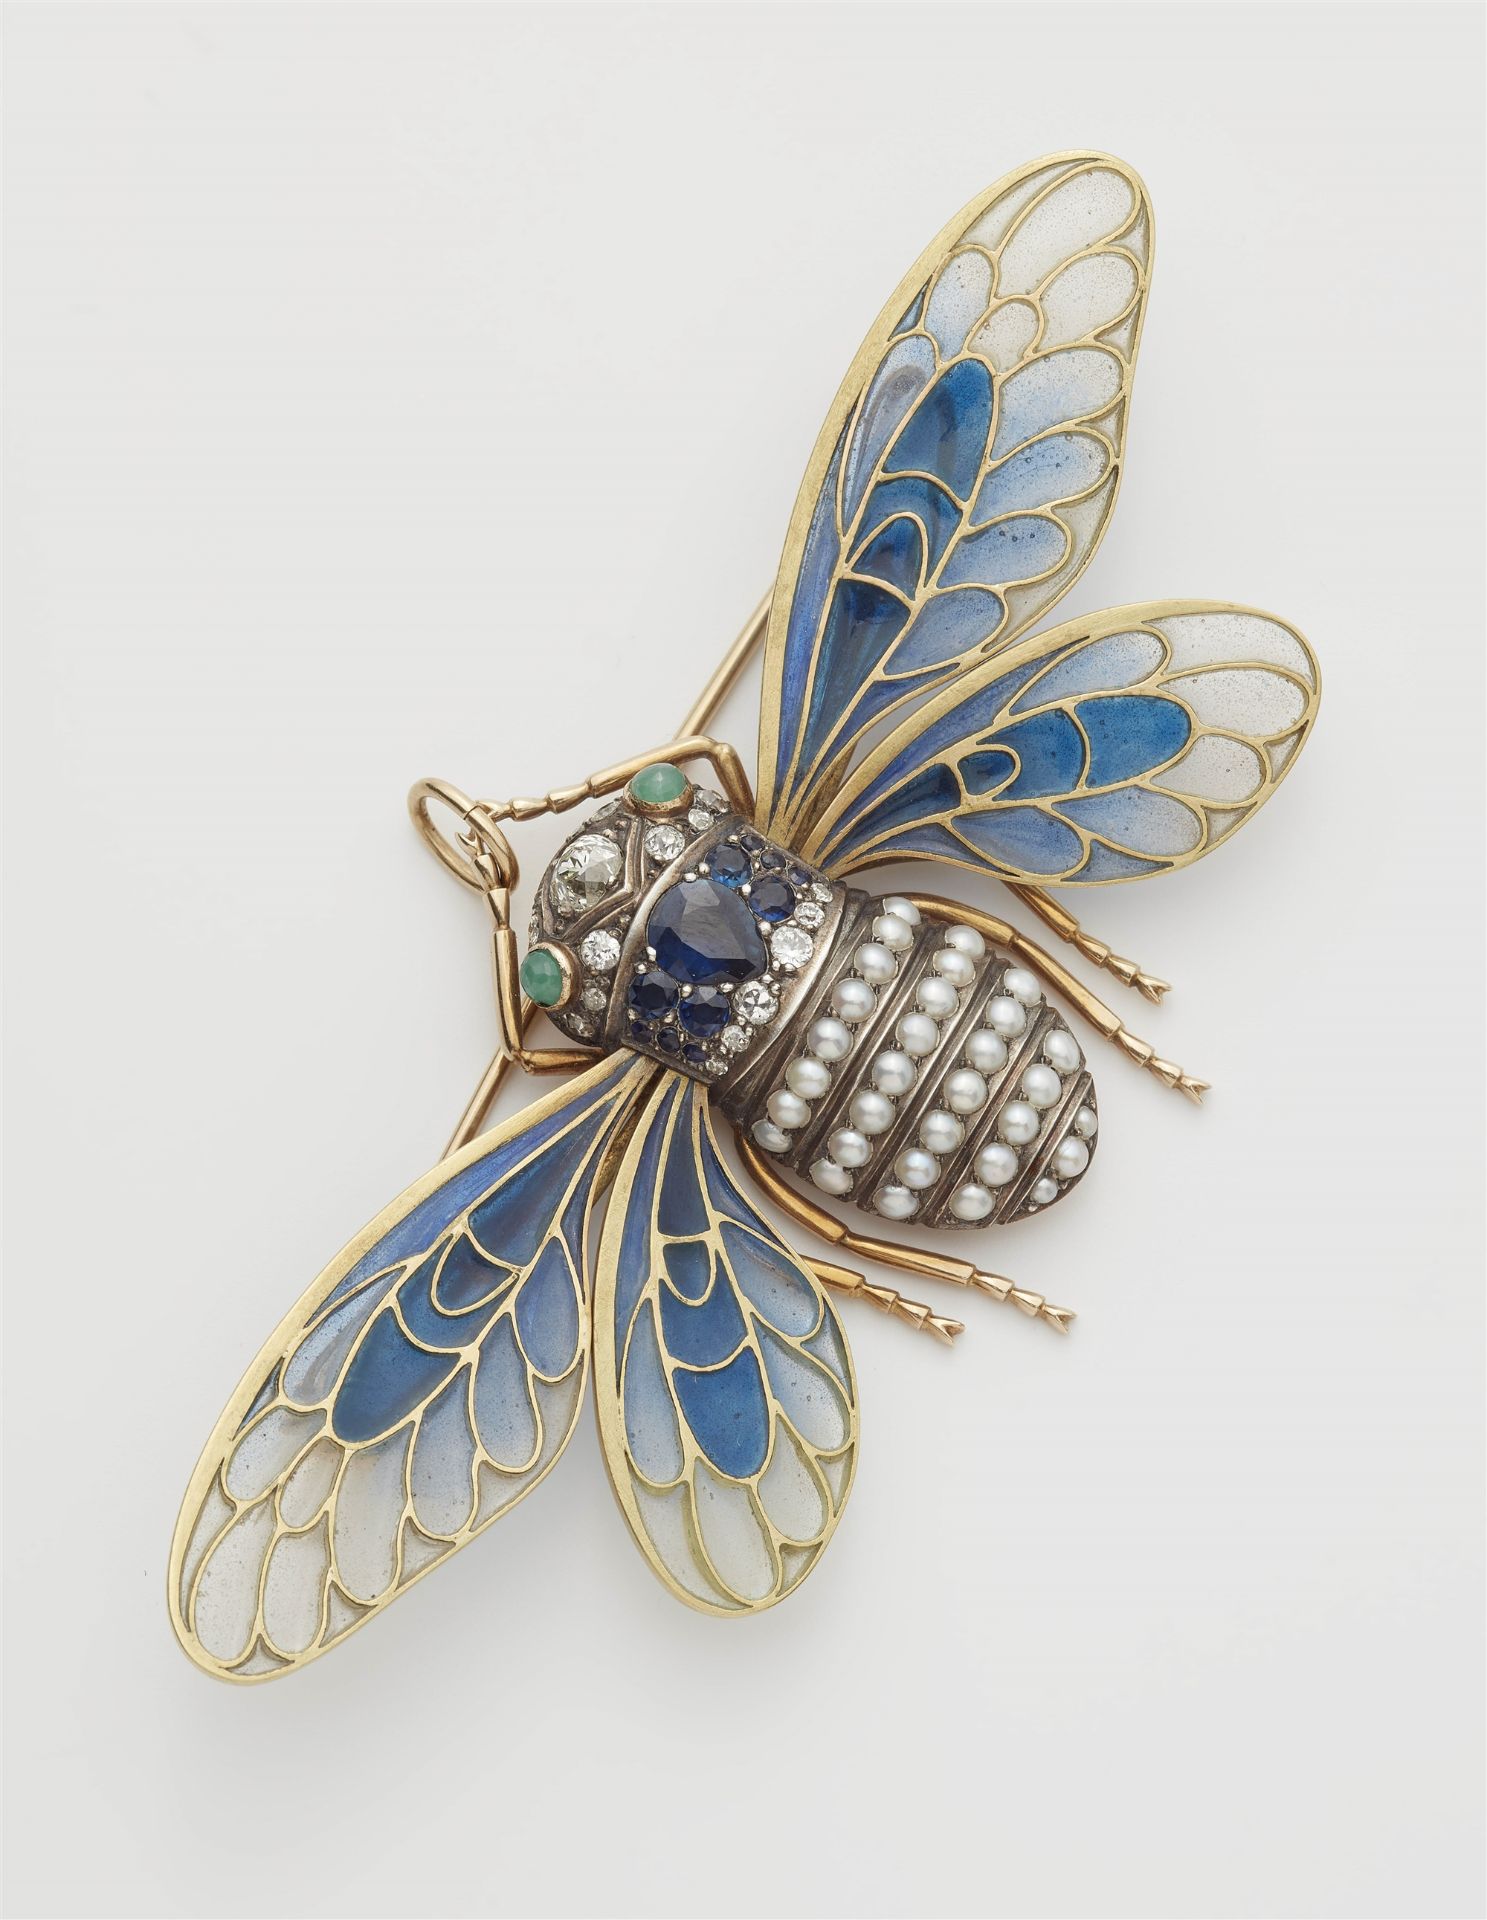 An Art Nouveau 14k gold enamel plique à jour cicada brooch.